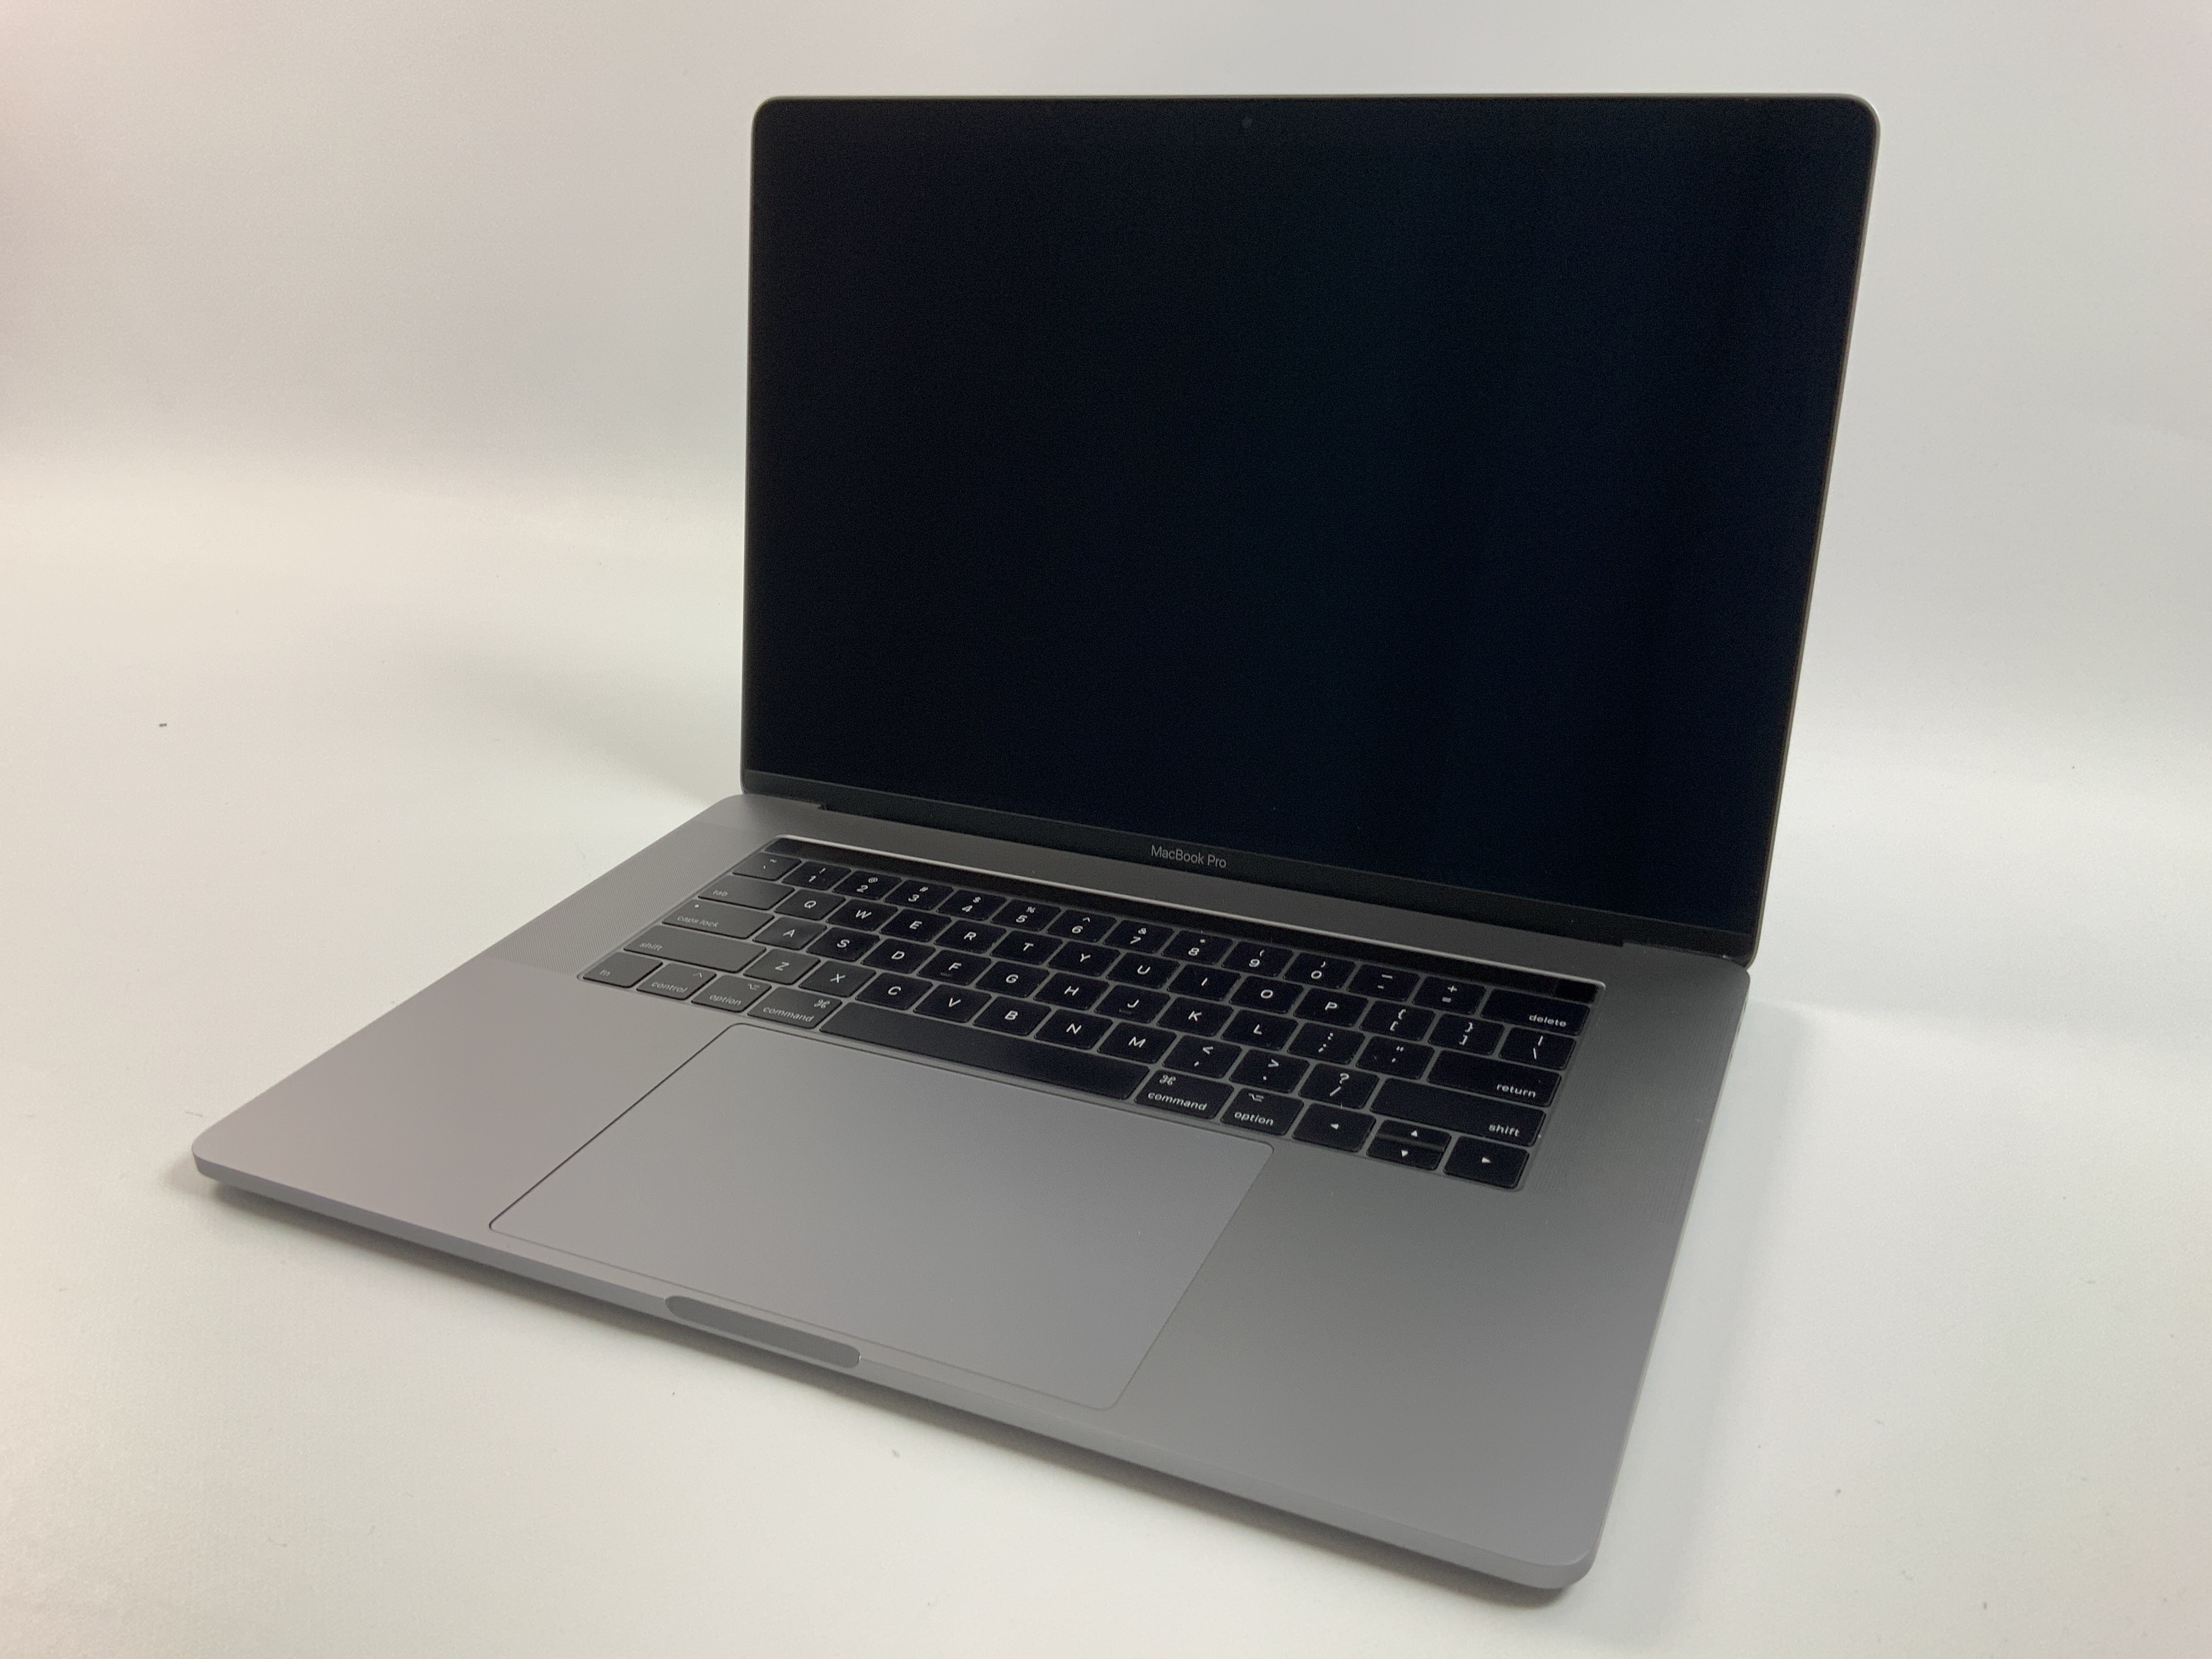 MacBook Pro 15" Touch Bar Mid 2017 (Intel Quad-Core i7 2.8 GHz 16 GB RAM 512 GB SSD), Space Gray, Intel Quad-Core i7 2.8 GHz, 16 GB RAM, 512 GB SSD, Bild 1